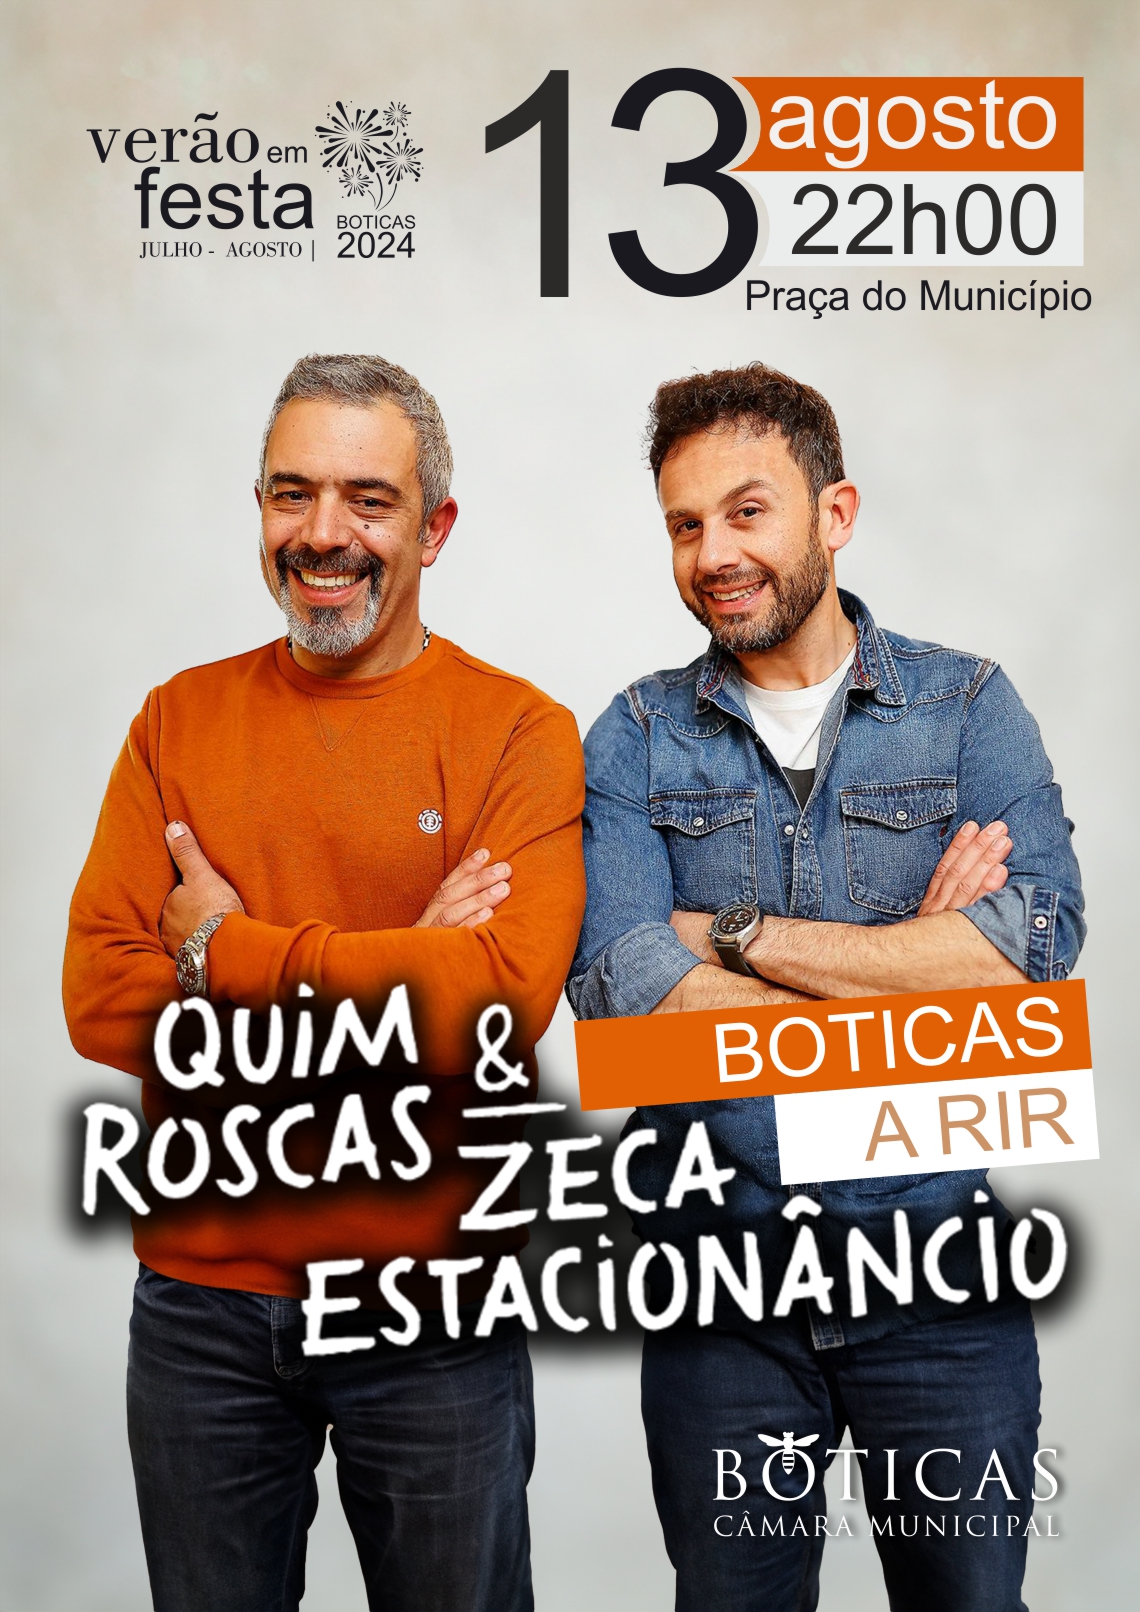 Quim Roscas & Zeca Estacionncio | Boticas a Rir - Noite de Comdia | Vero em Festa 2024